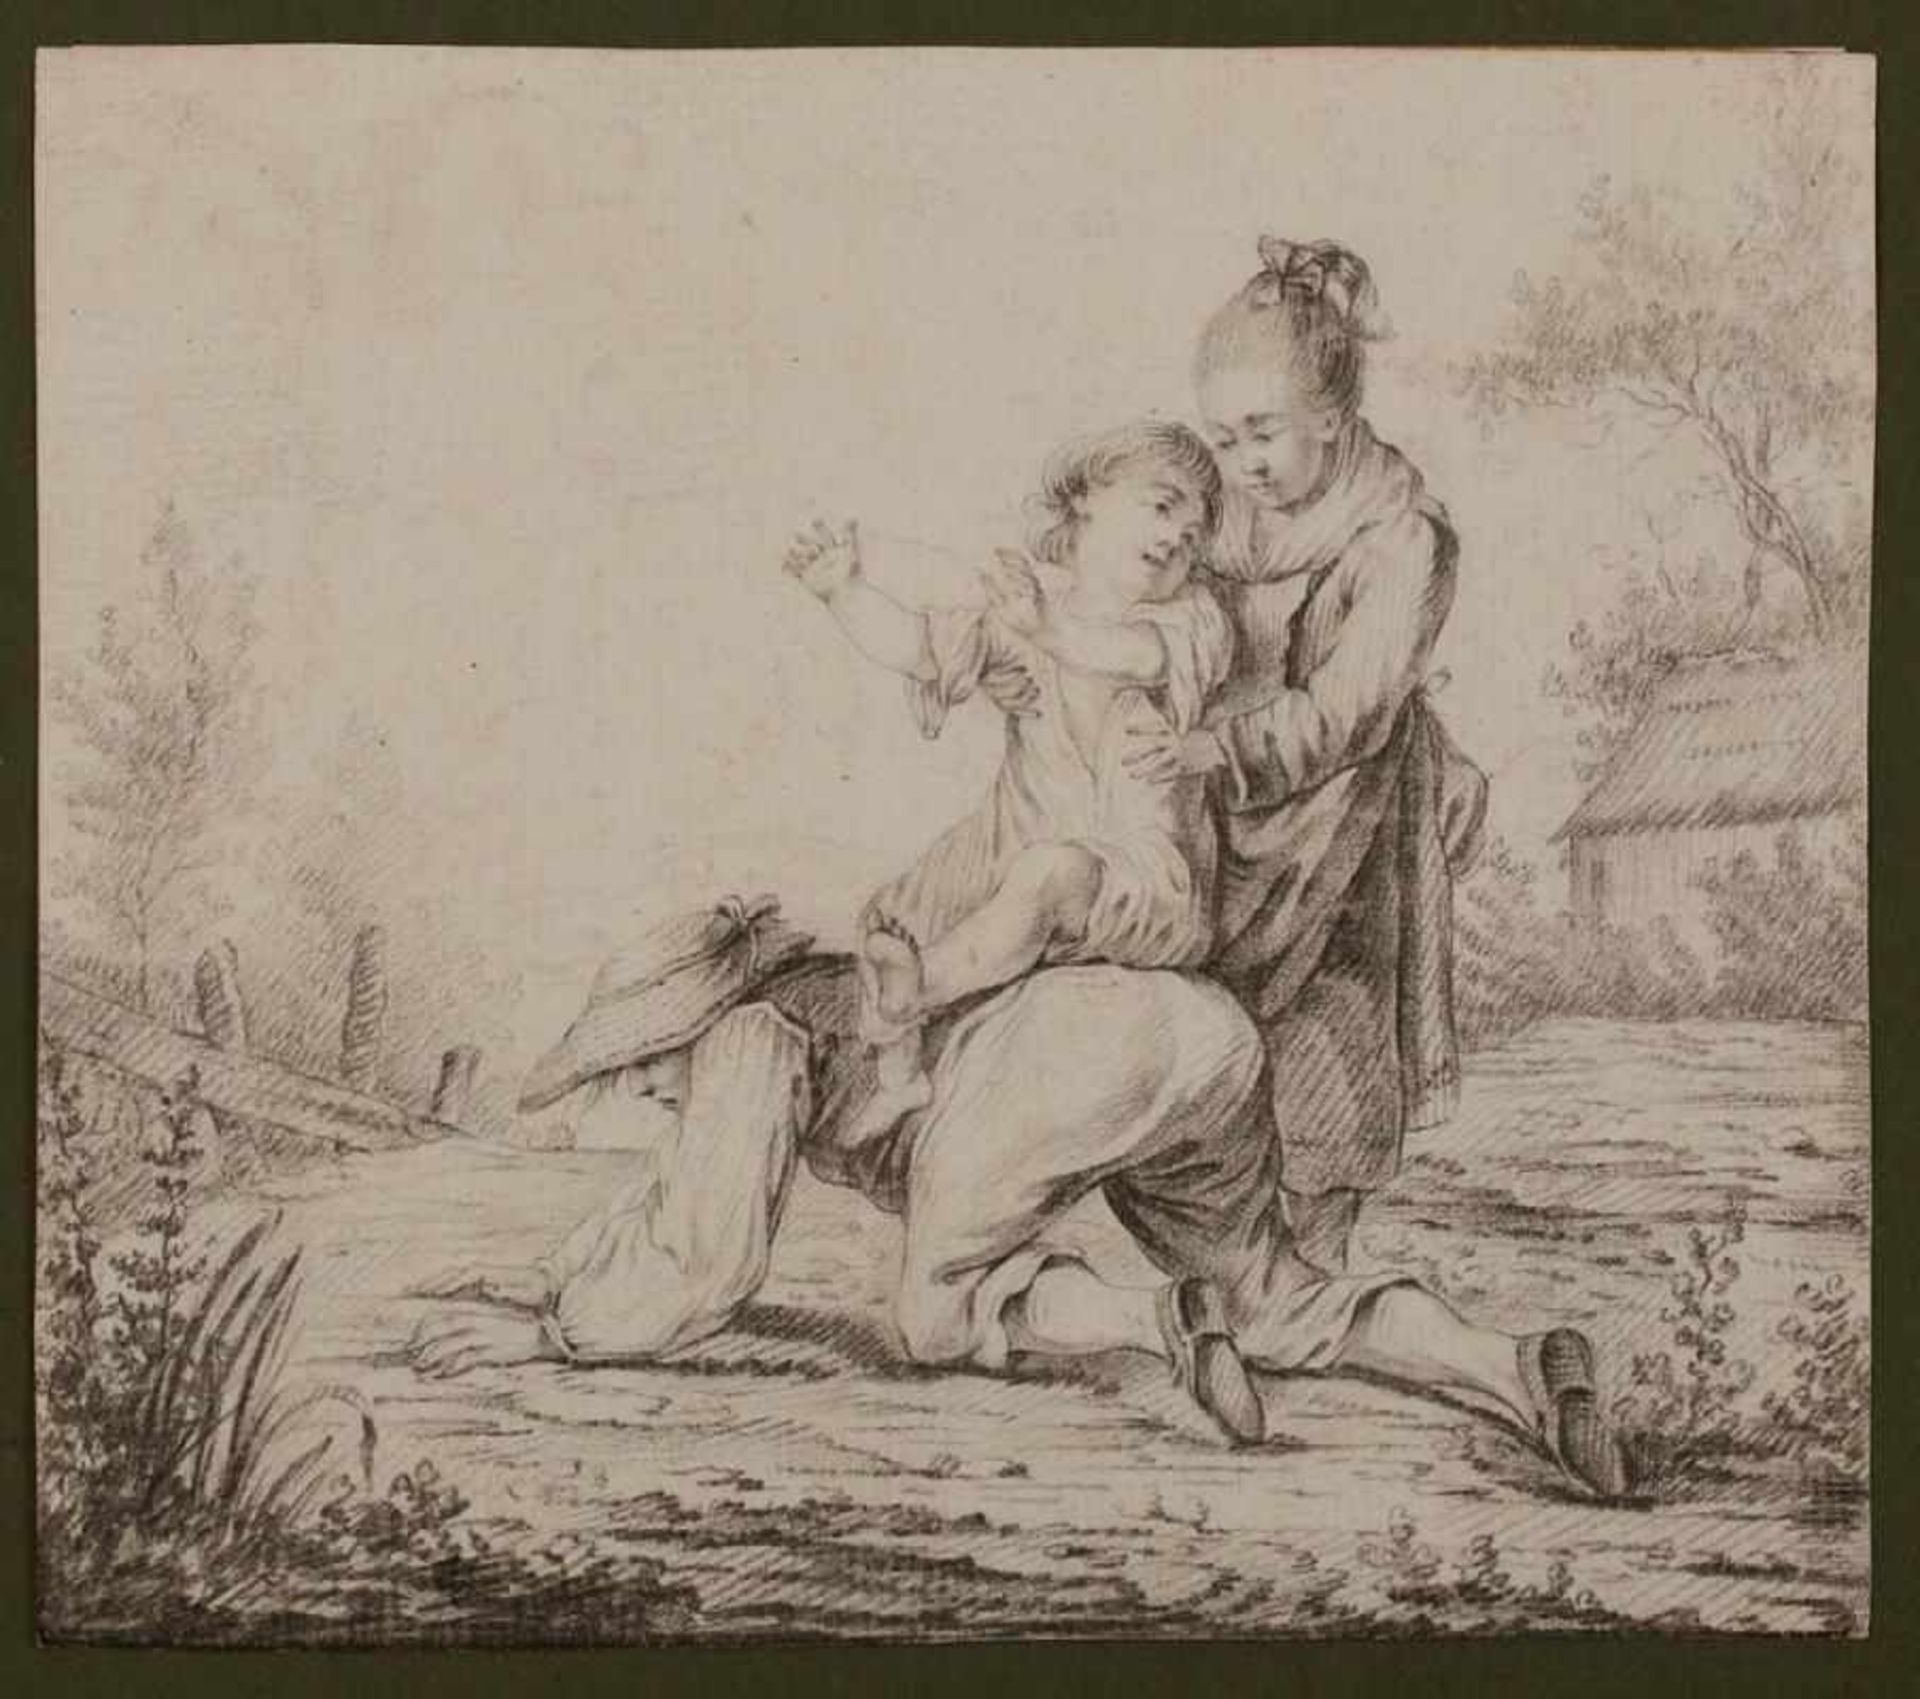 Bleistiftzeichnung Johann Georg Wille, zugeschr. 1715 - 1808 "Spielende Familie" verso m. einer